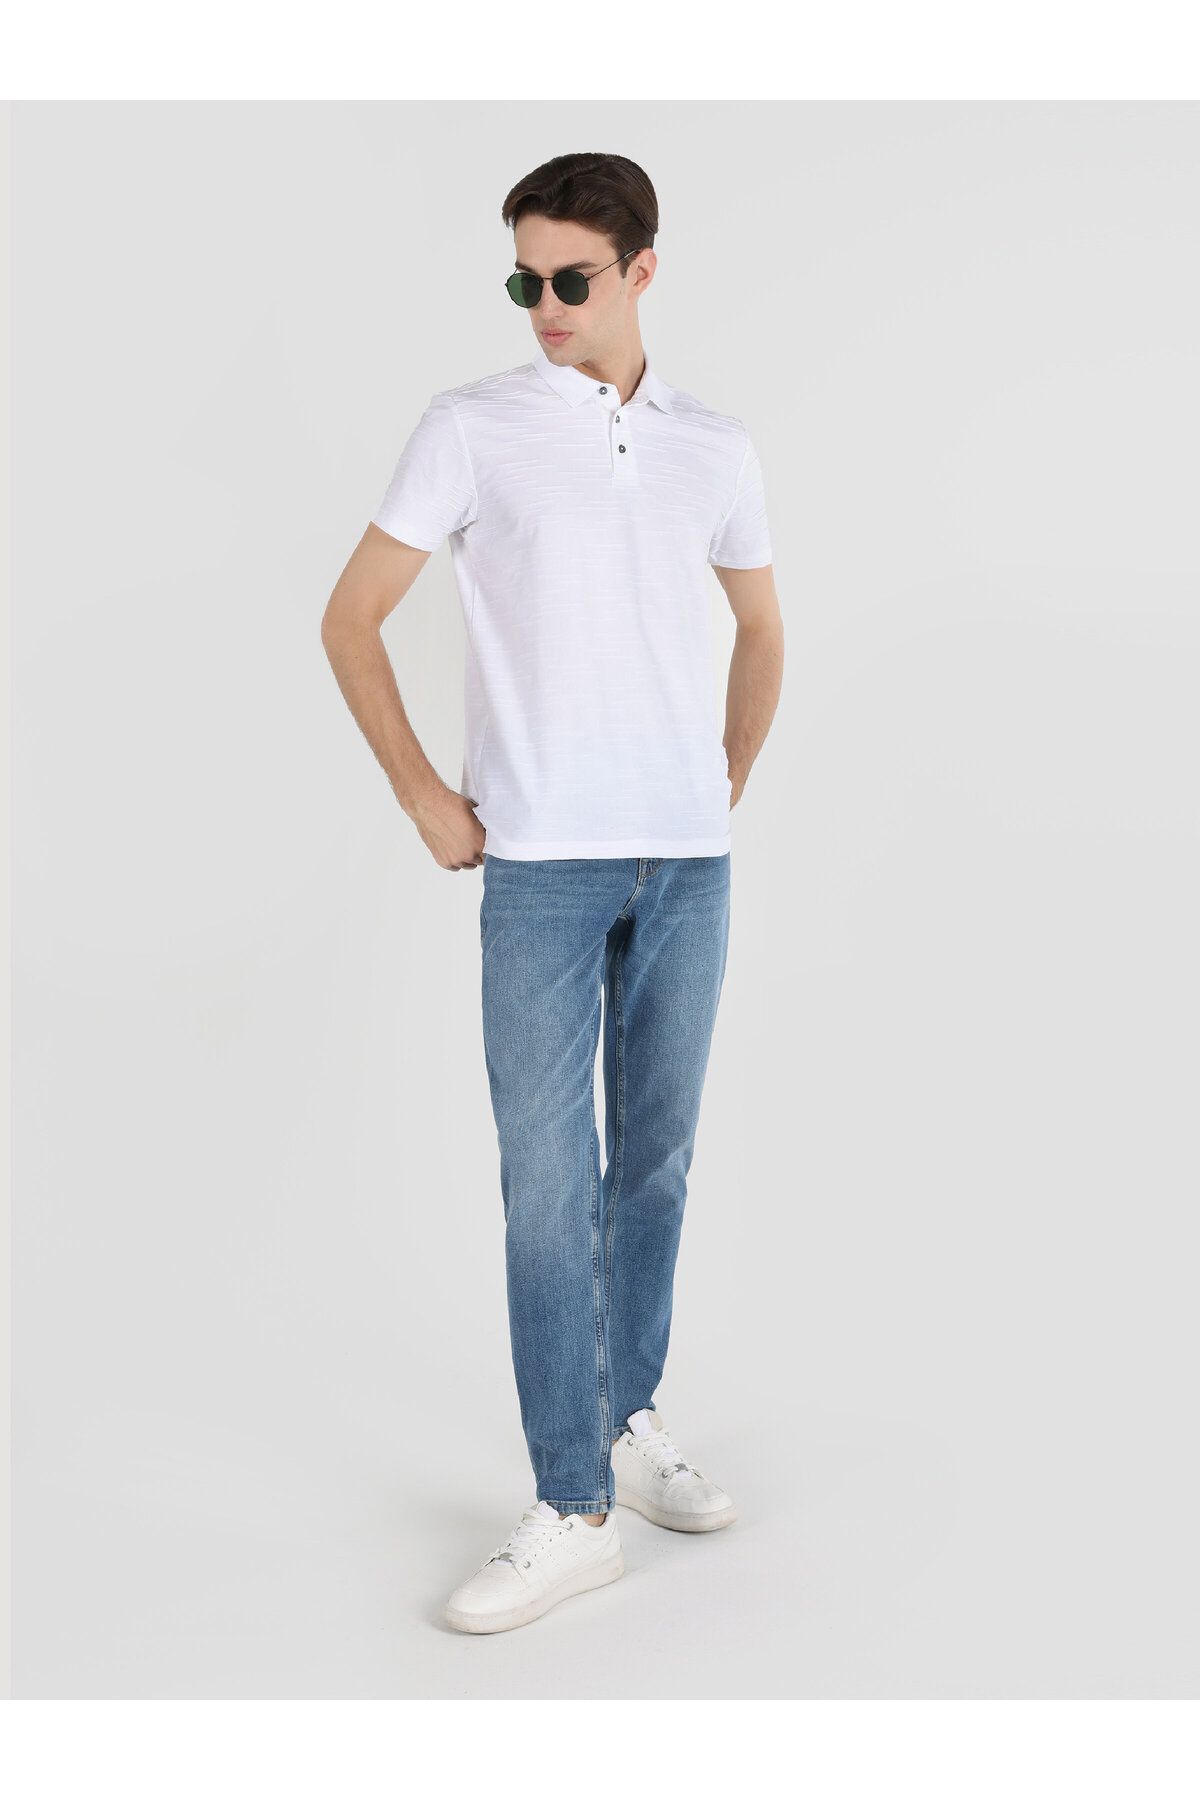 Colin’s تی شرت آستین کوتاه یقه دار مردانه سفید با تناسب معمولی